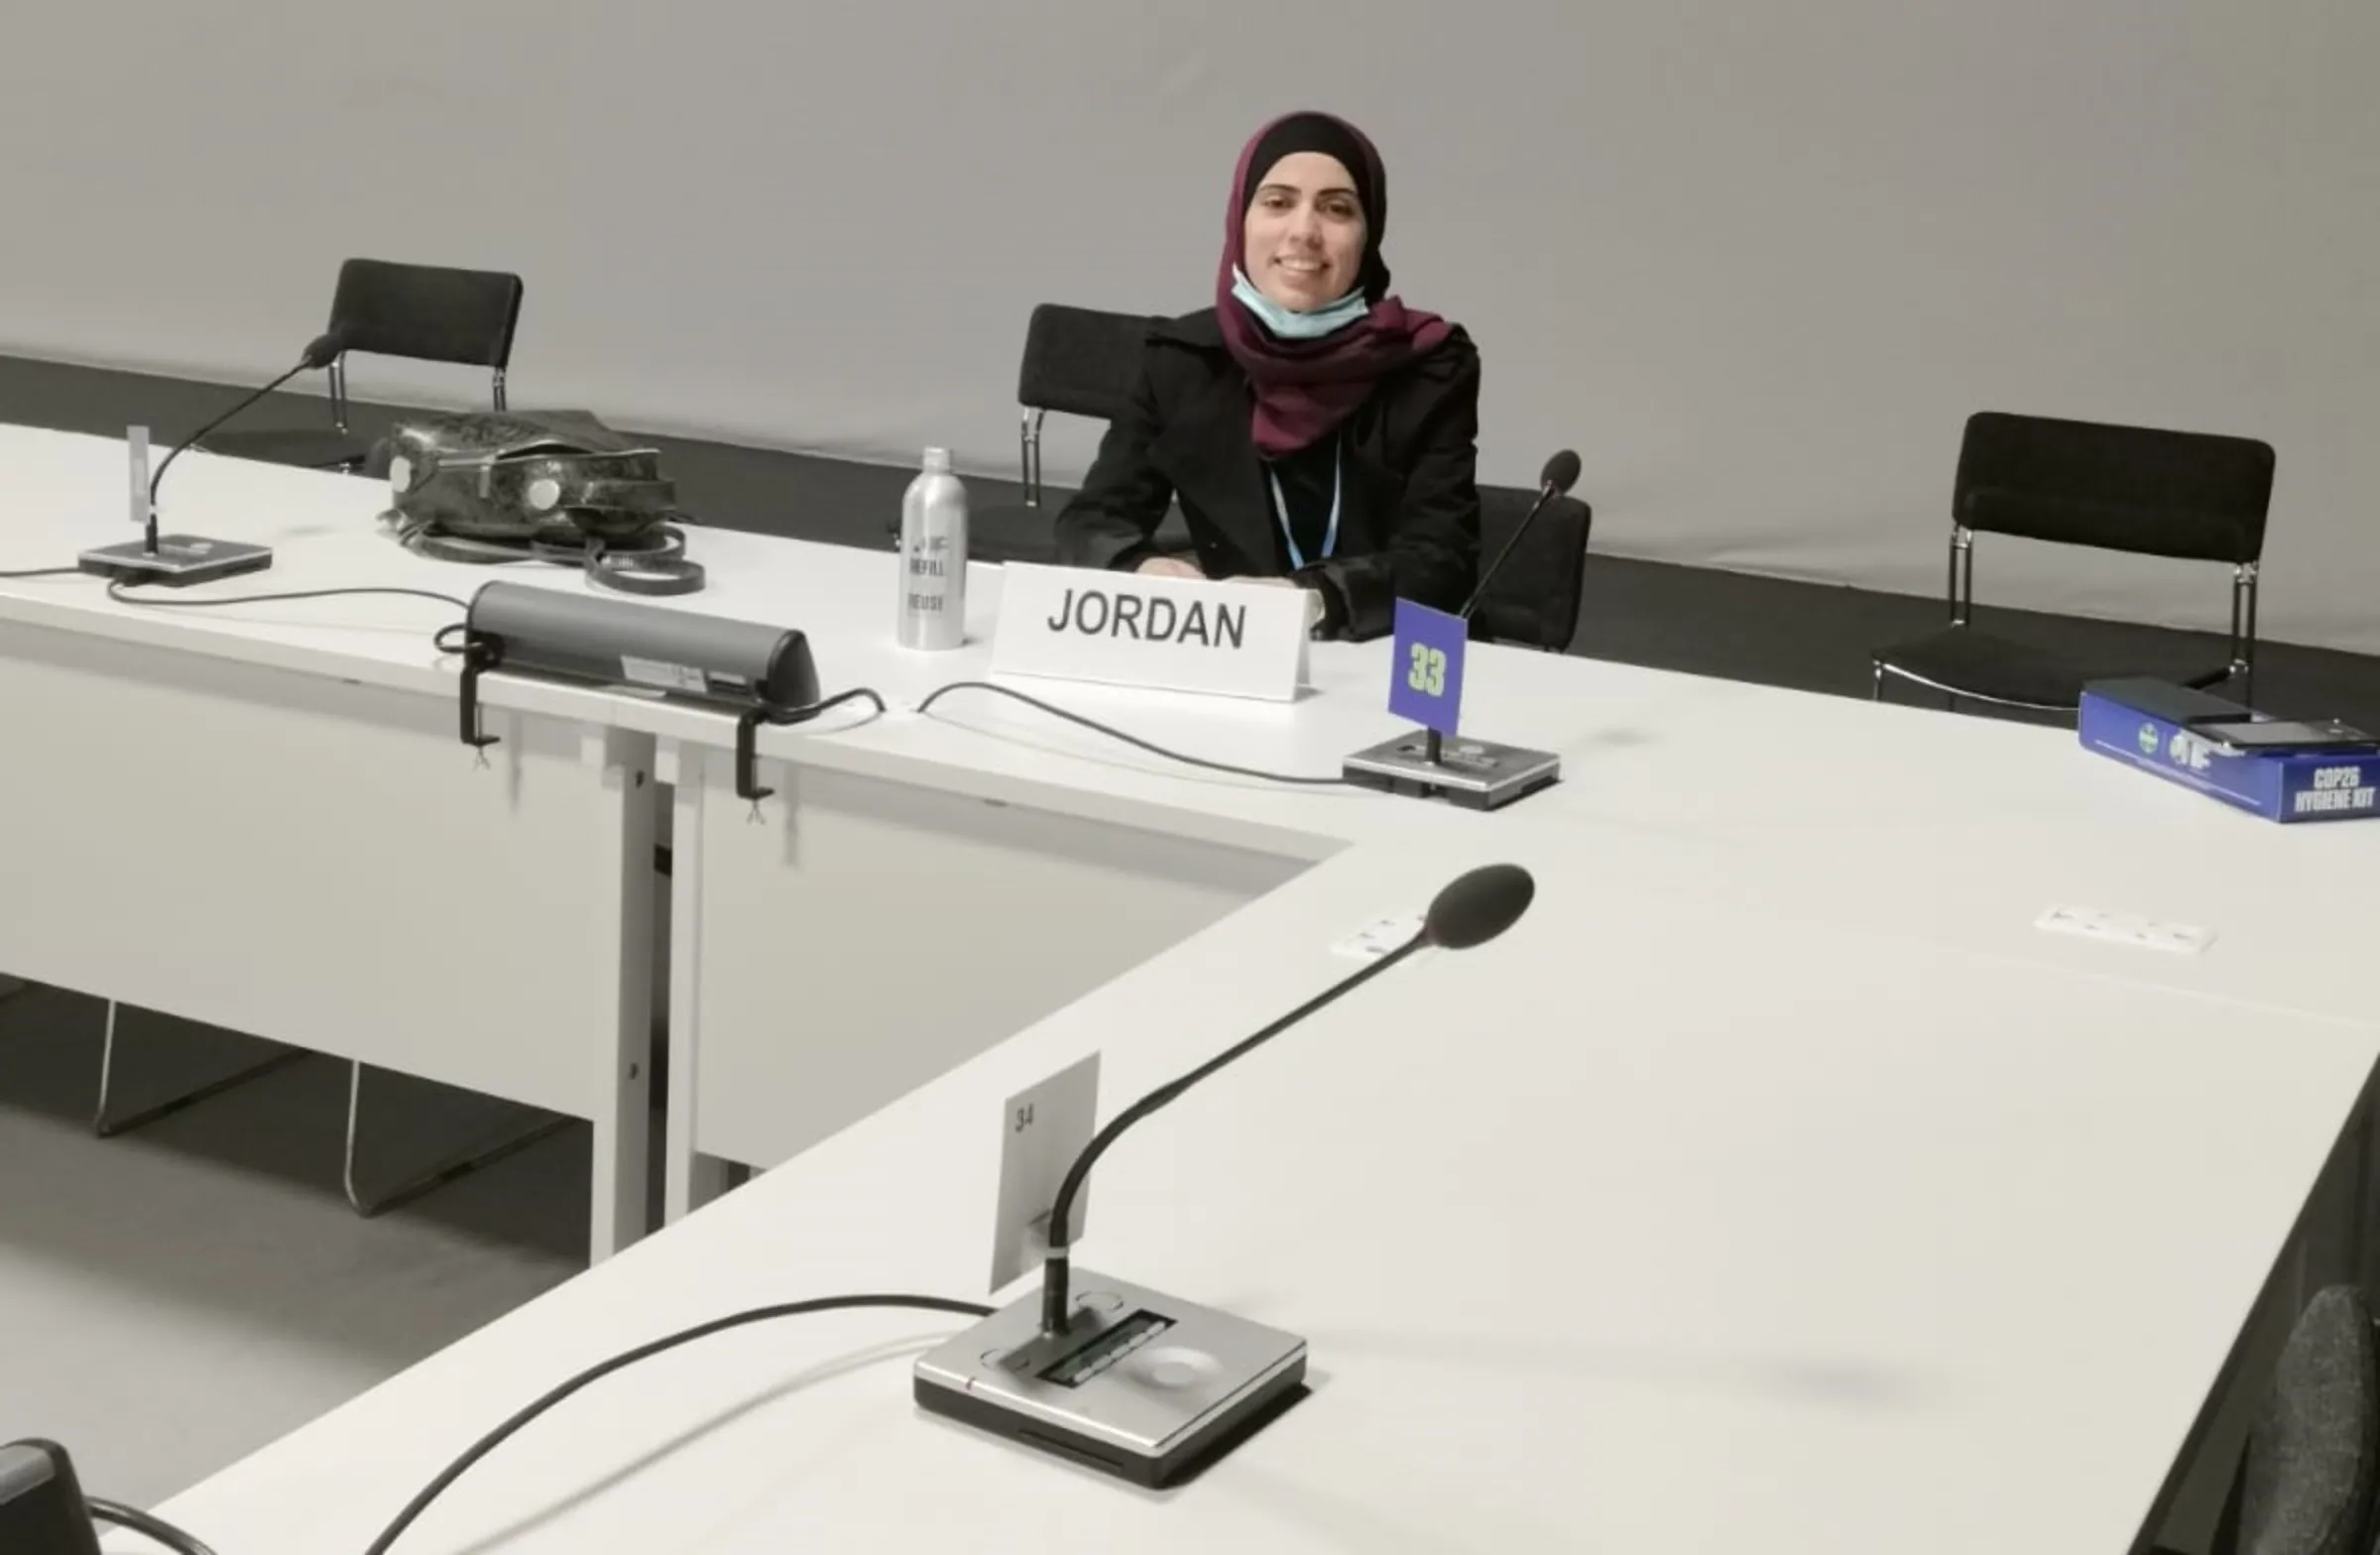 Chemical engineer Hanadi Ali Al Rabai’eh, 28, negotiates for Jordan at the COP26 U.N. climate talks in Glasgow, November 2021. Hanadi Ali Al Fabai’eh/Thomson Reuters Foundation